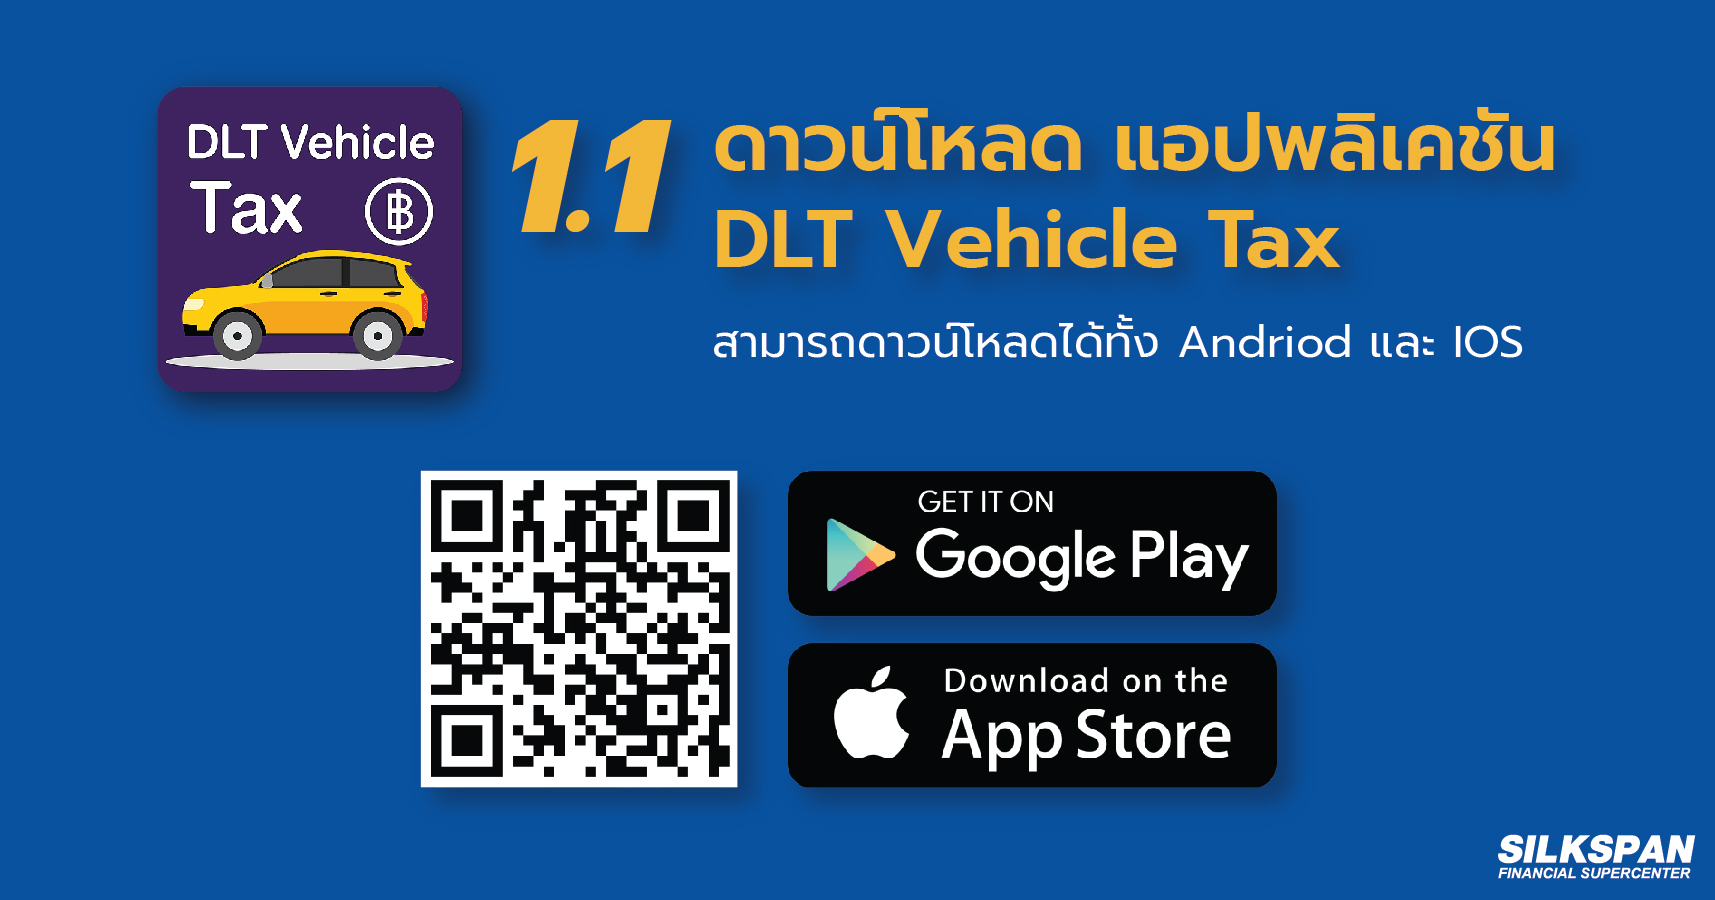 ต่อภาษีรถยนต์ผ่านทางออนไลน์ทาง DLT Vehicl Tax